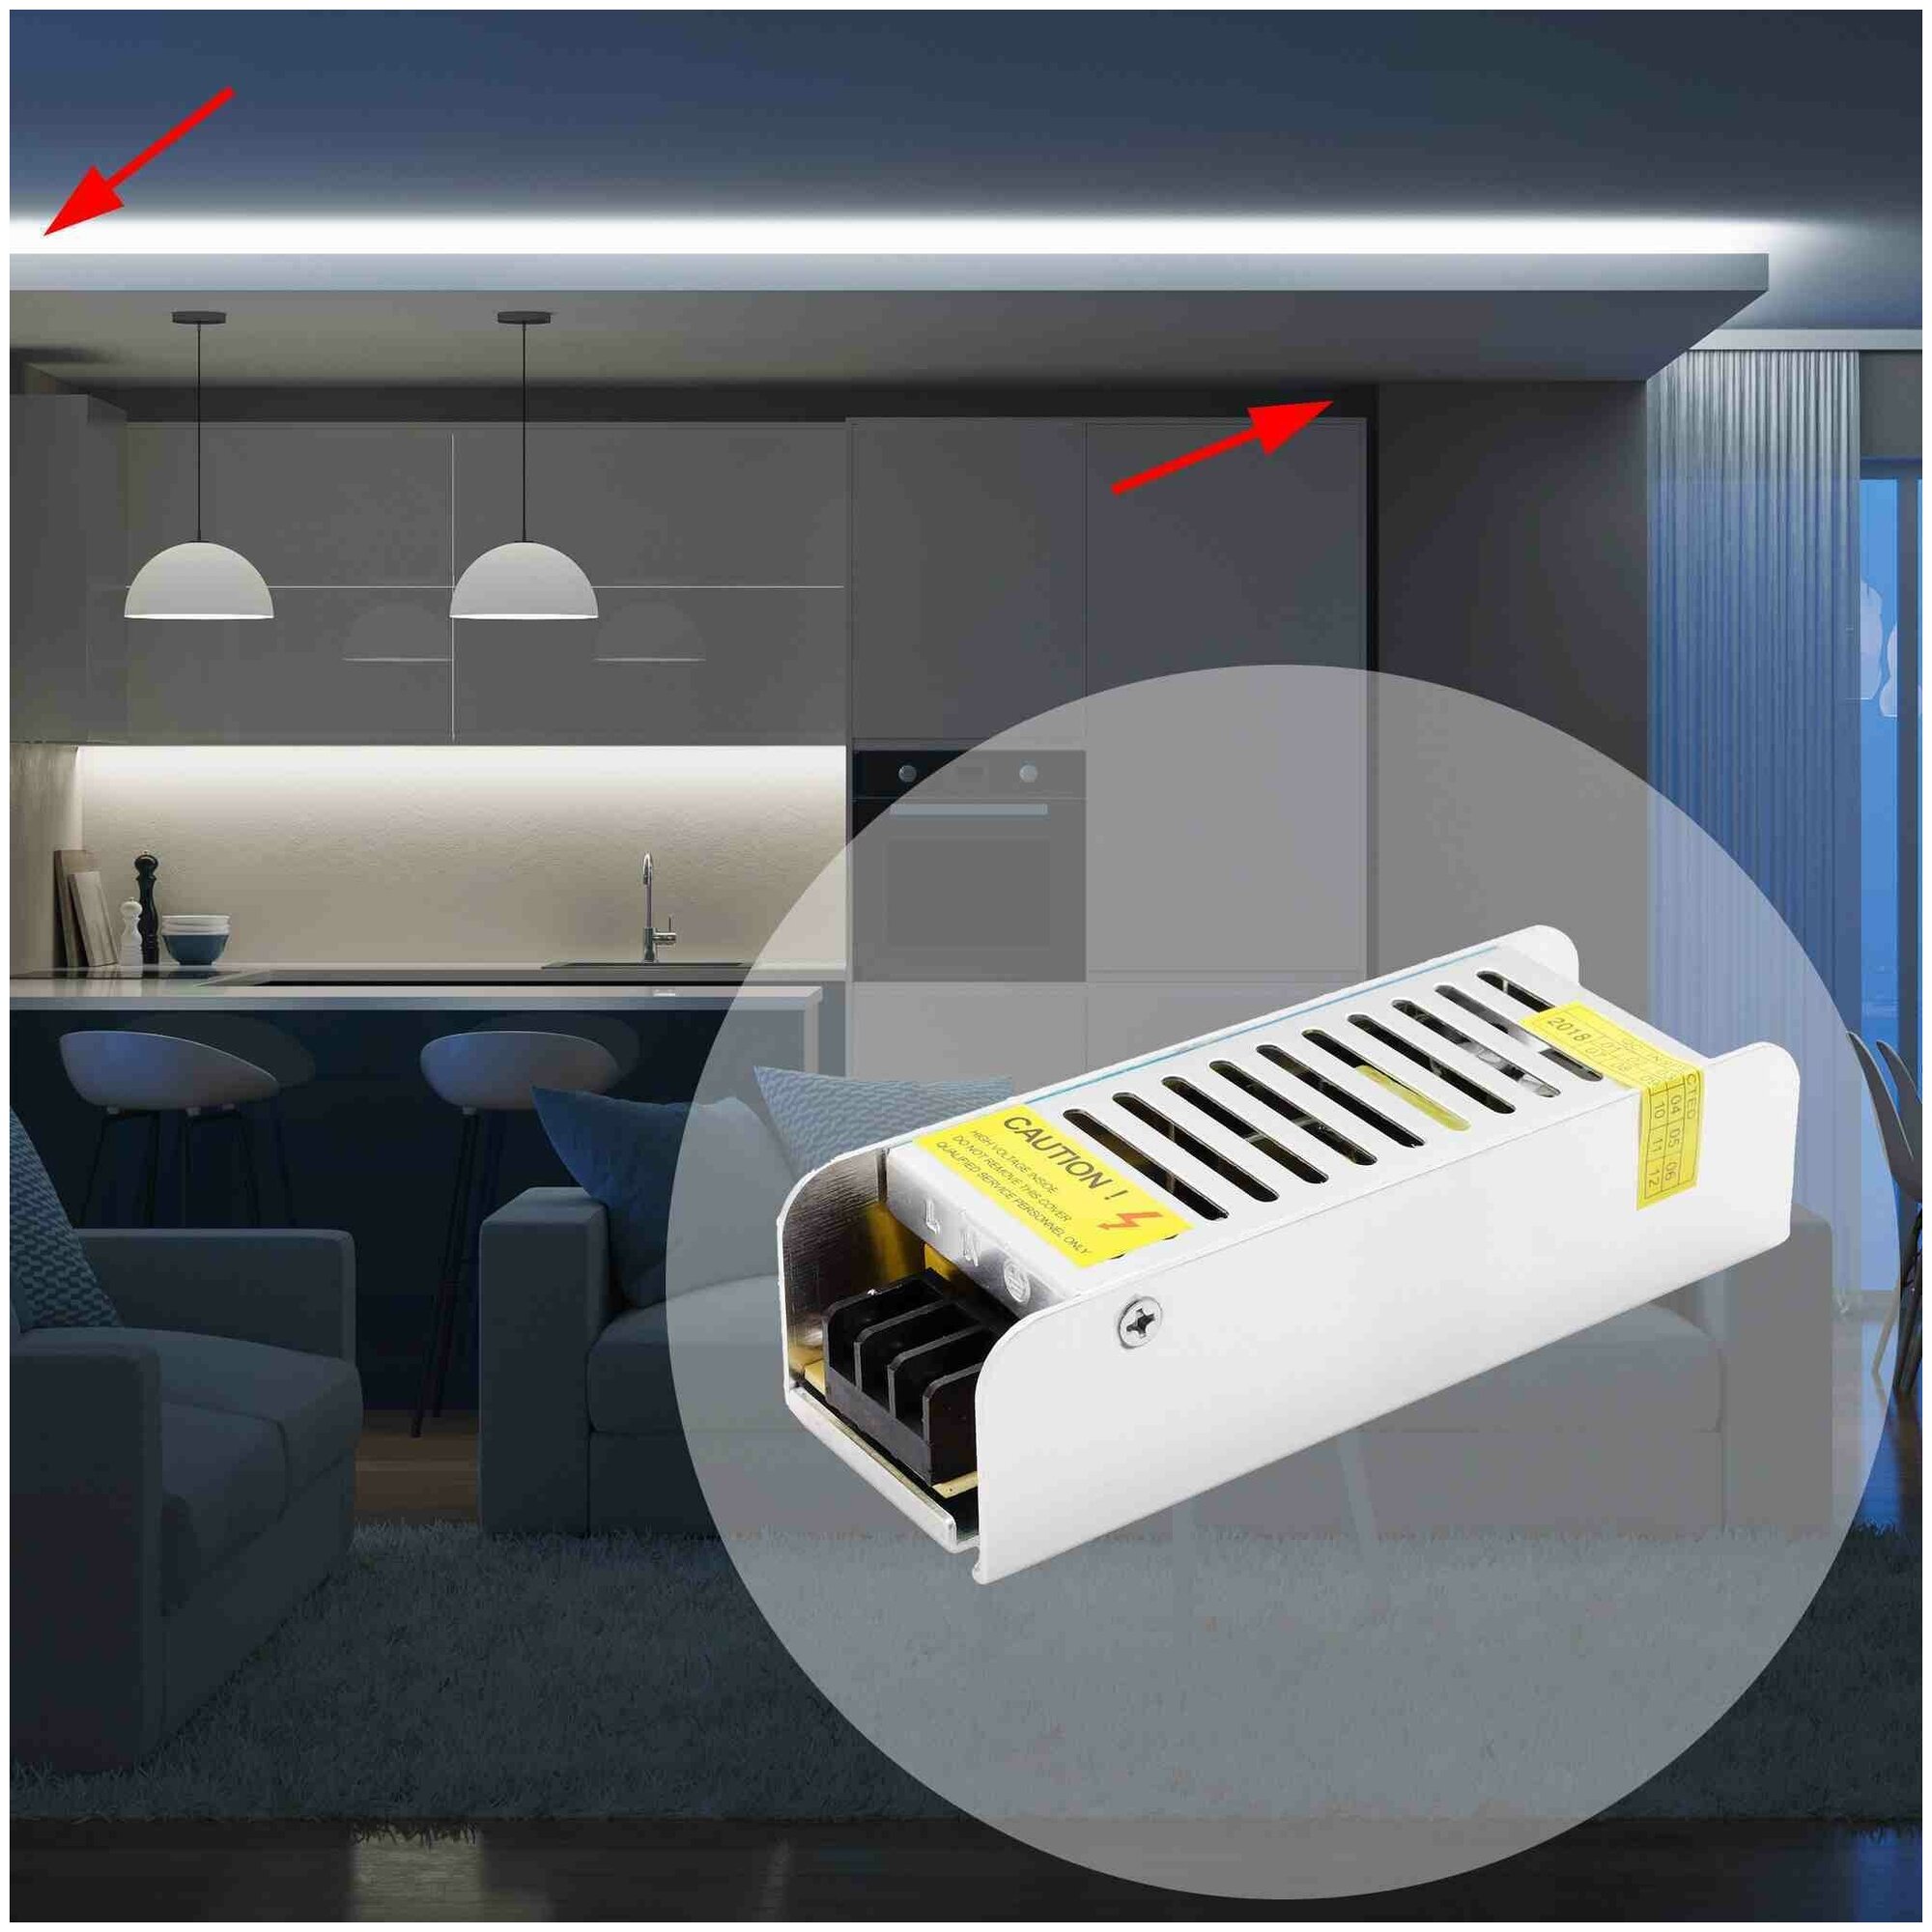 Блок питания слим-металл с напряжением 12В и степенью защиты IP20 для светильника светодиодной ленты или LED лампы / Универсальный адаптер питания для светодиодного освещения 40Вт, AC 175-240В, 3.2А, гарантия 1 год / БП с защитой от перегрузки,